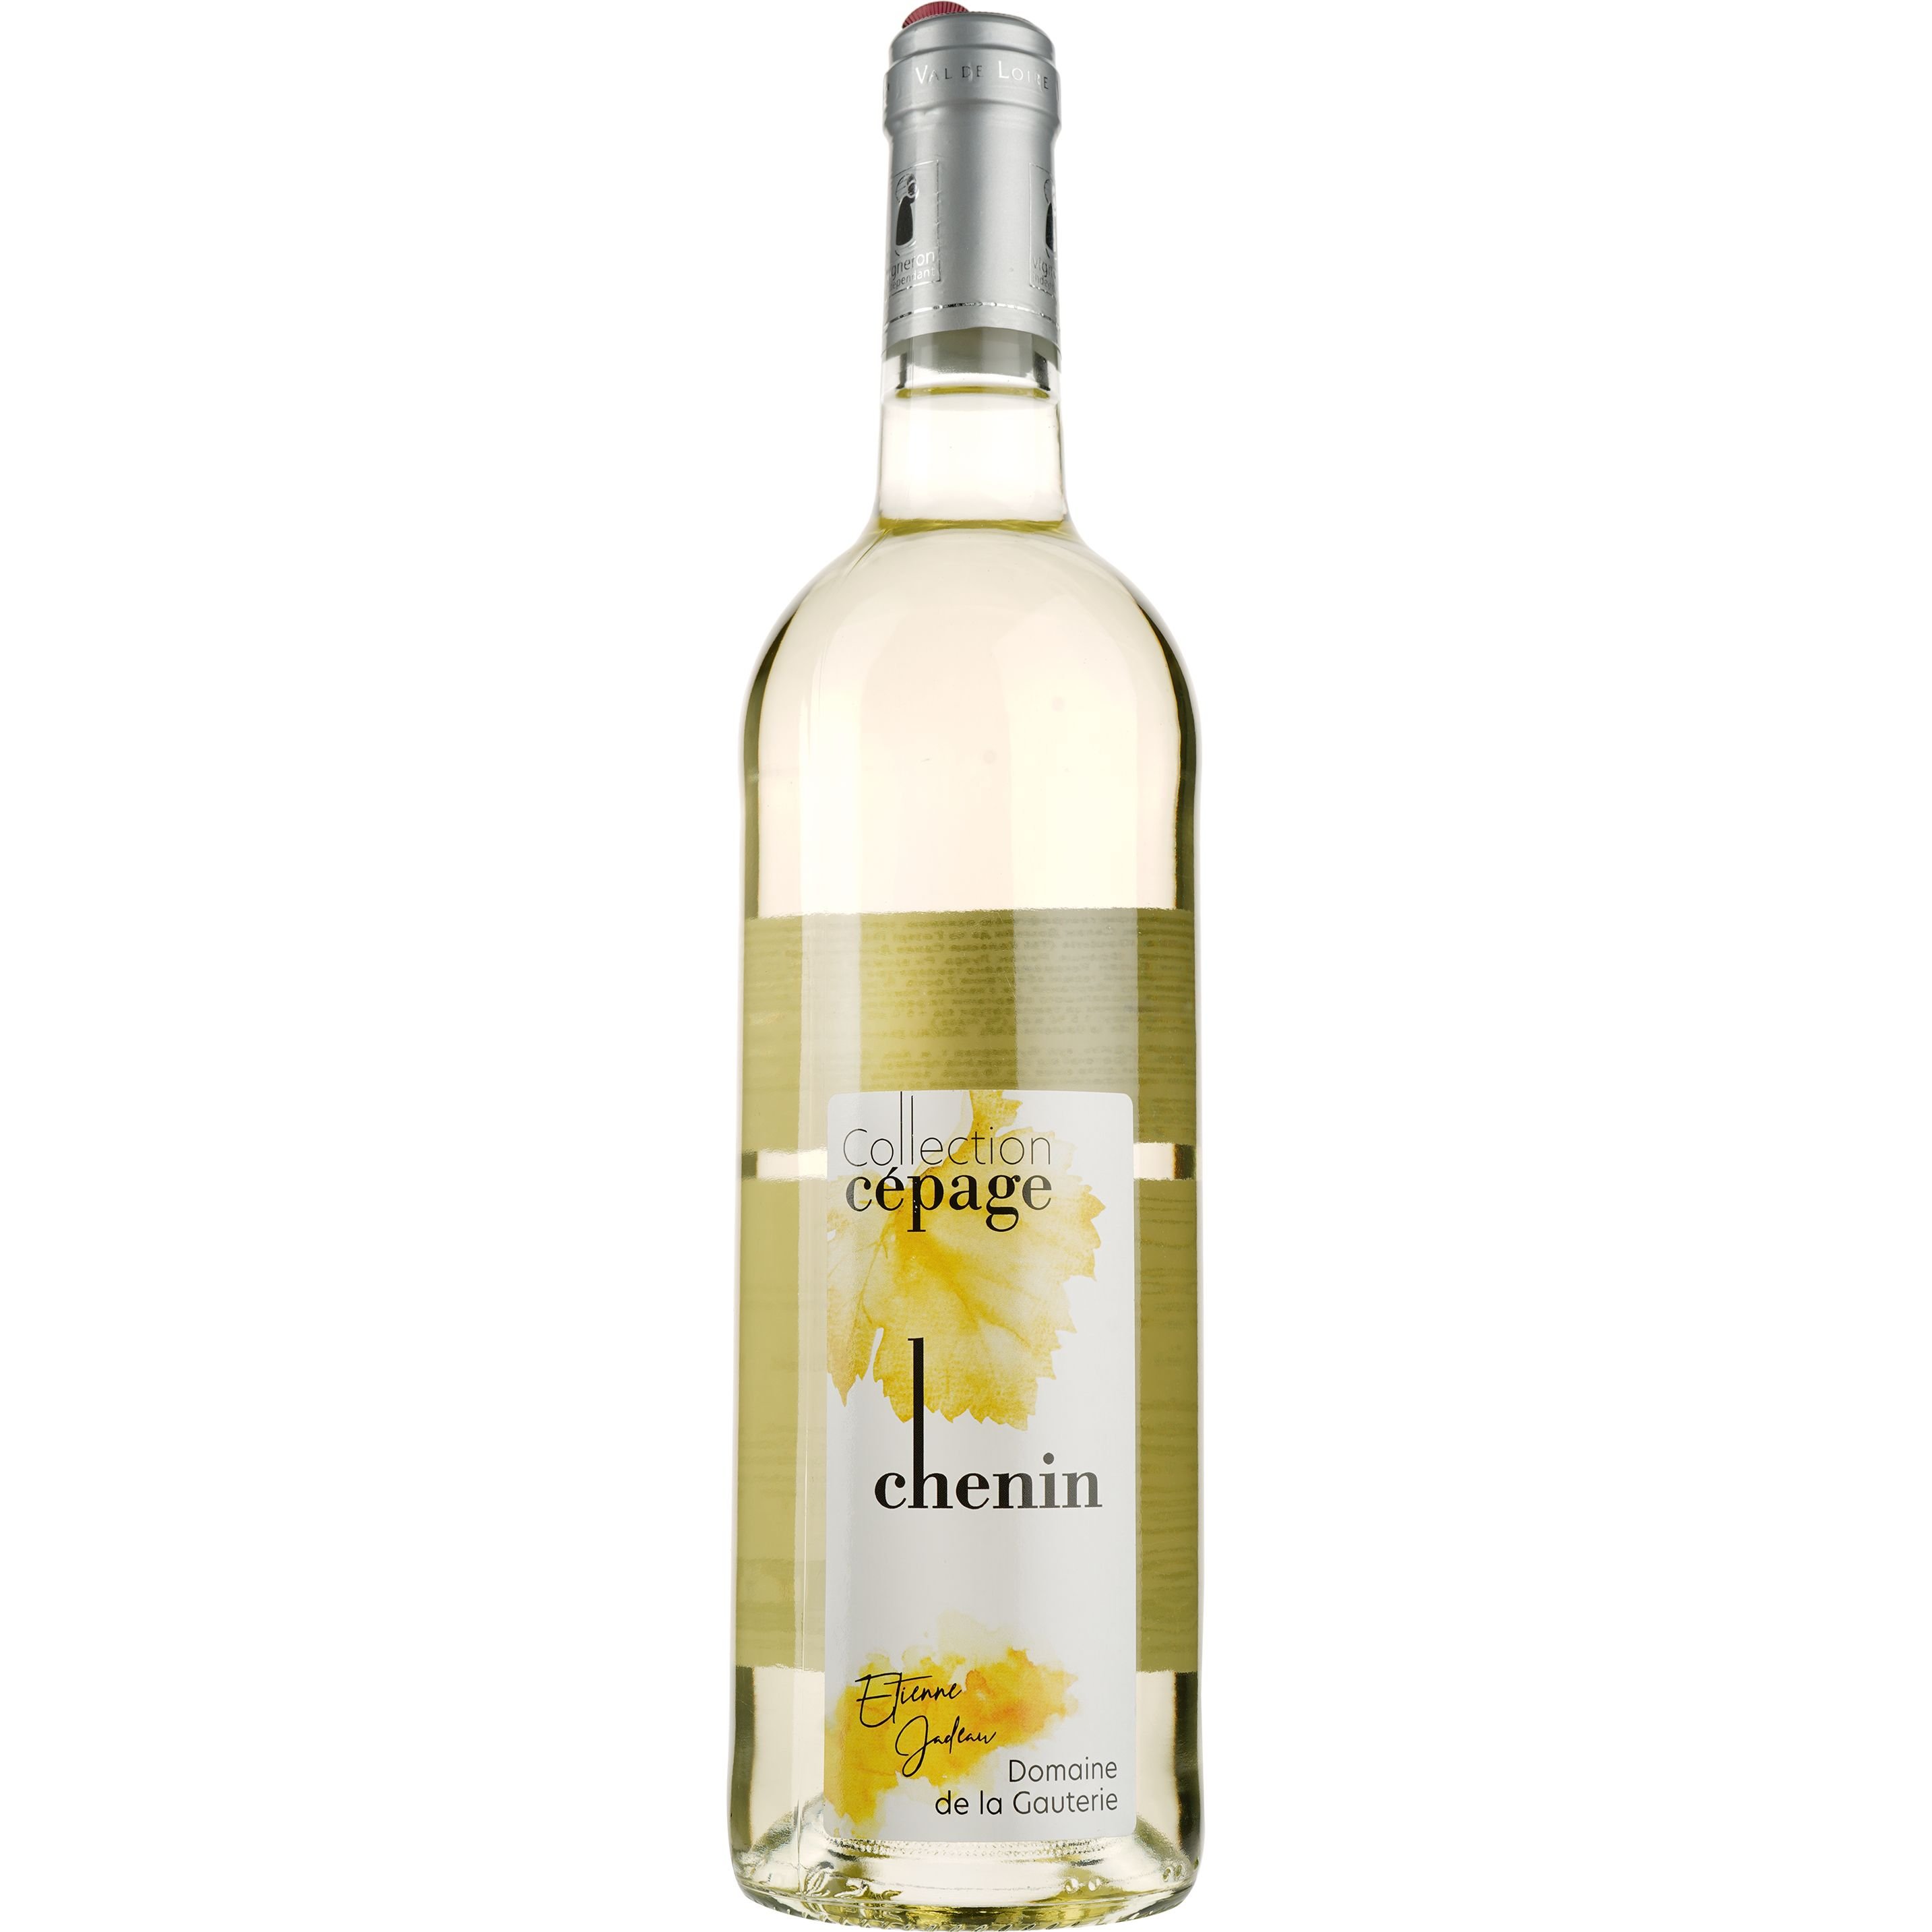 Вино Domaine de la Gauterie Chenin Collection Cepage Val de Loire IGP, біле, напівсухе, 0,75 л - фото 1